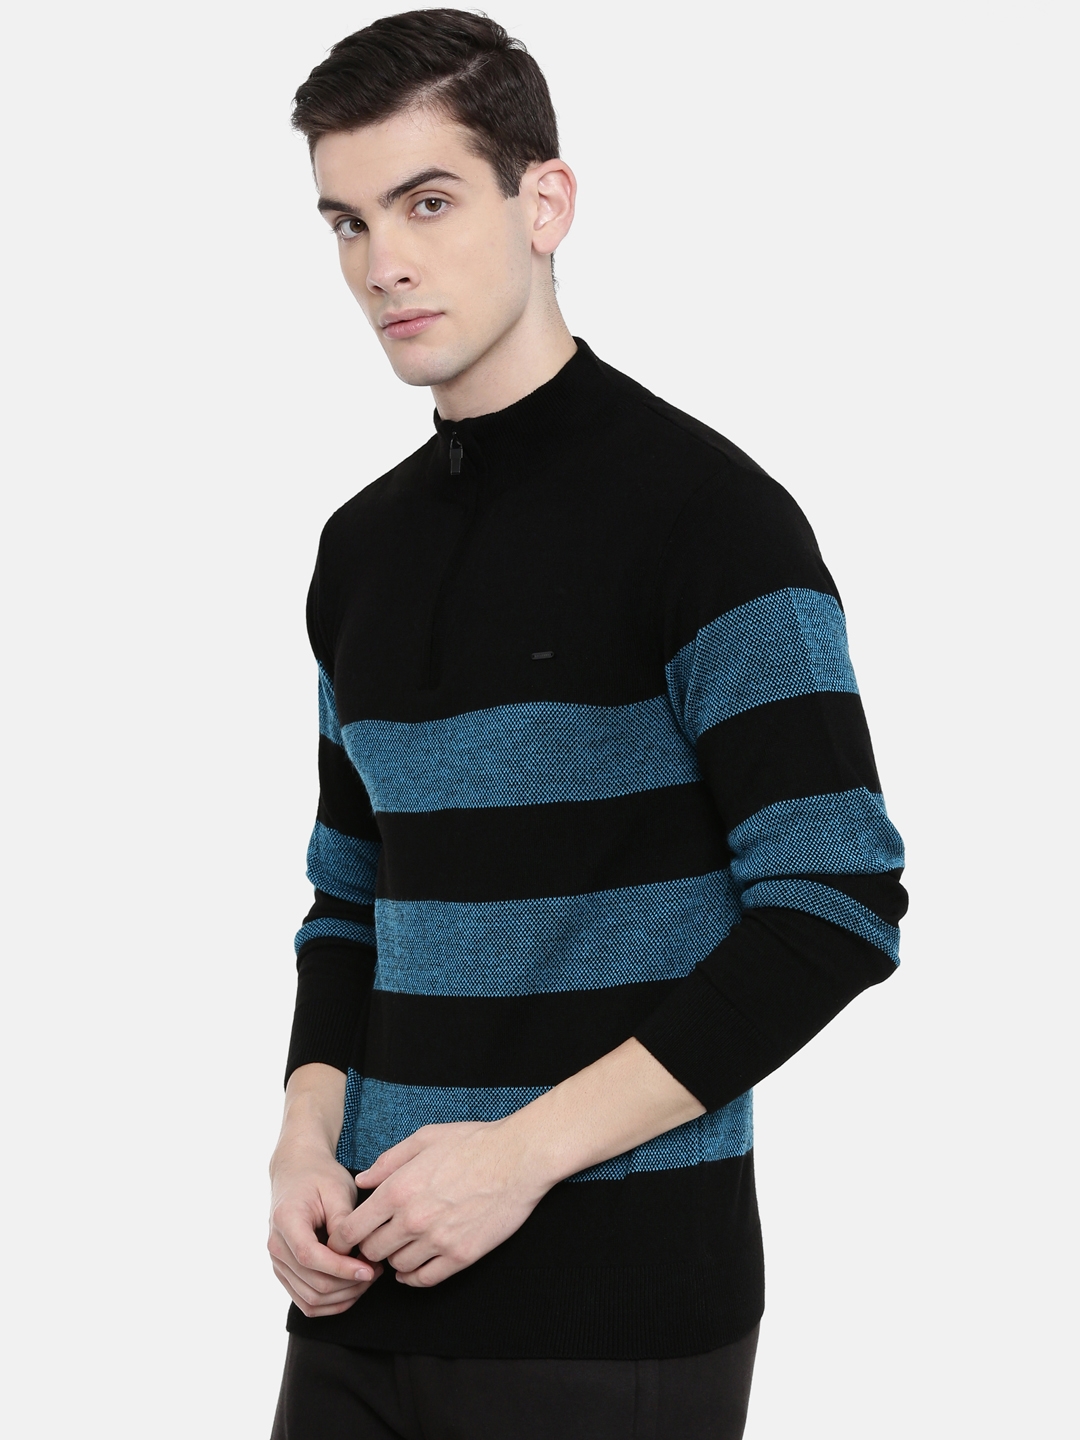 Men's Black Cotton Melange Sweaters